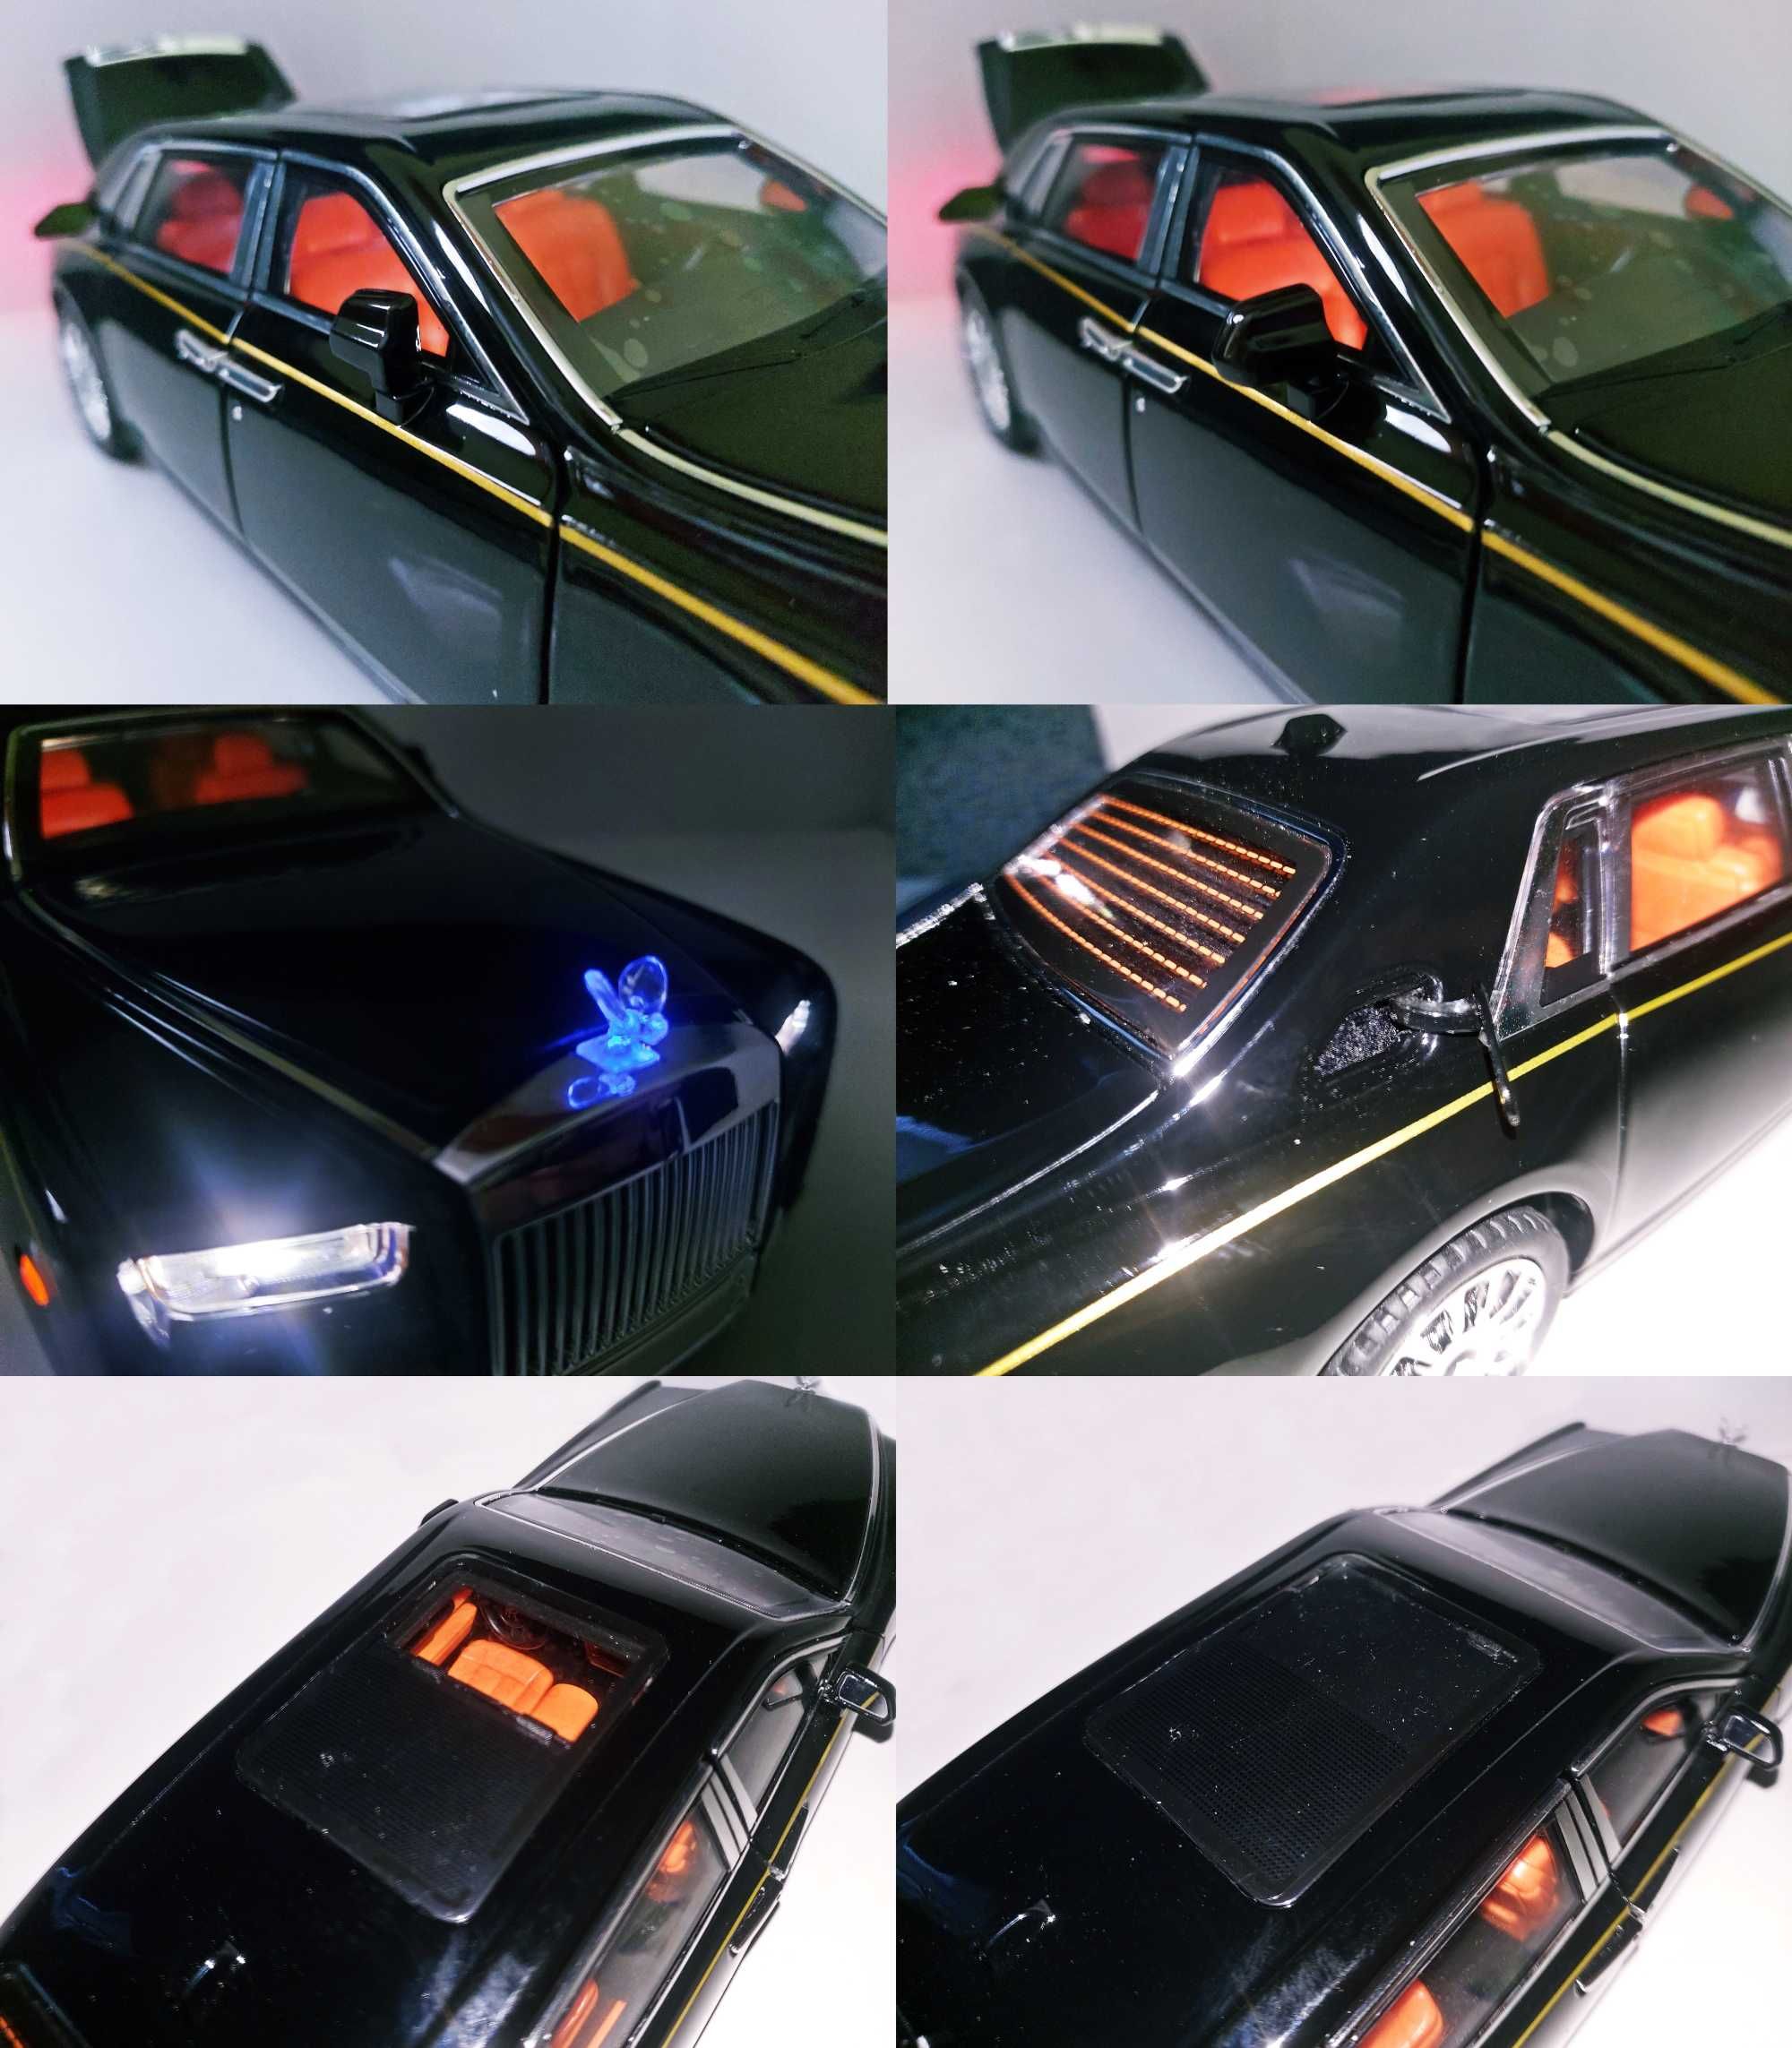 Rolls-Royce "RR" Phantom " Luxury Car " 17'